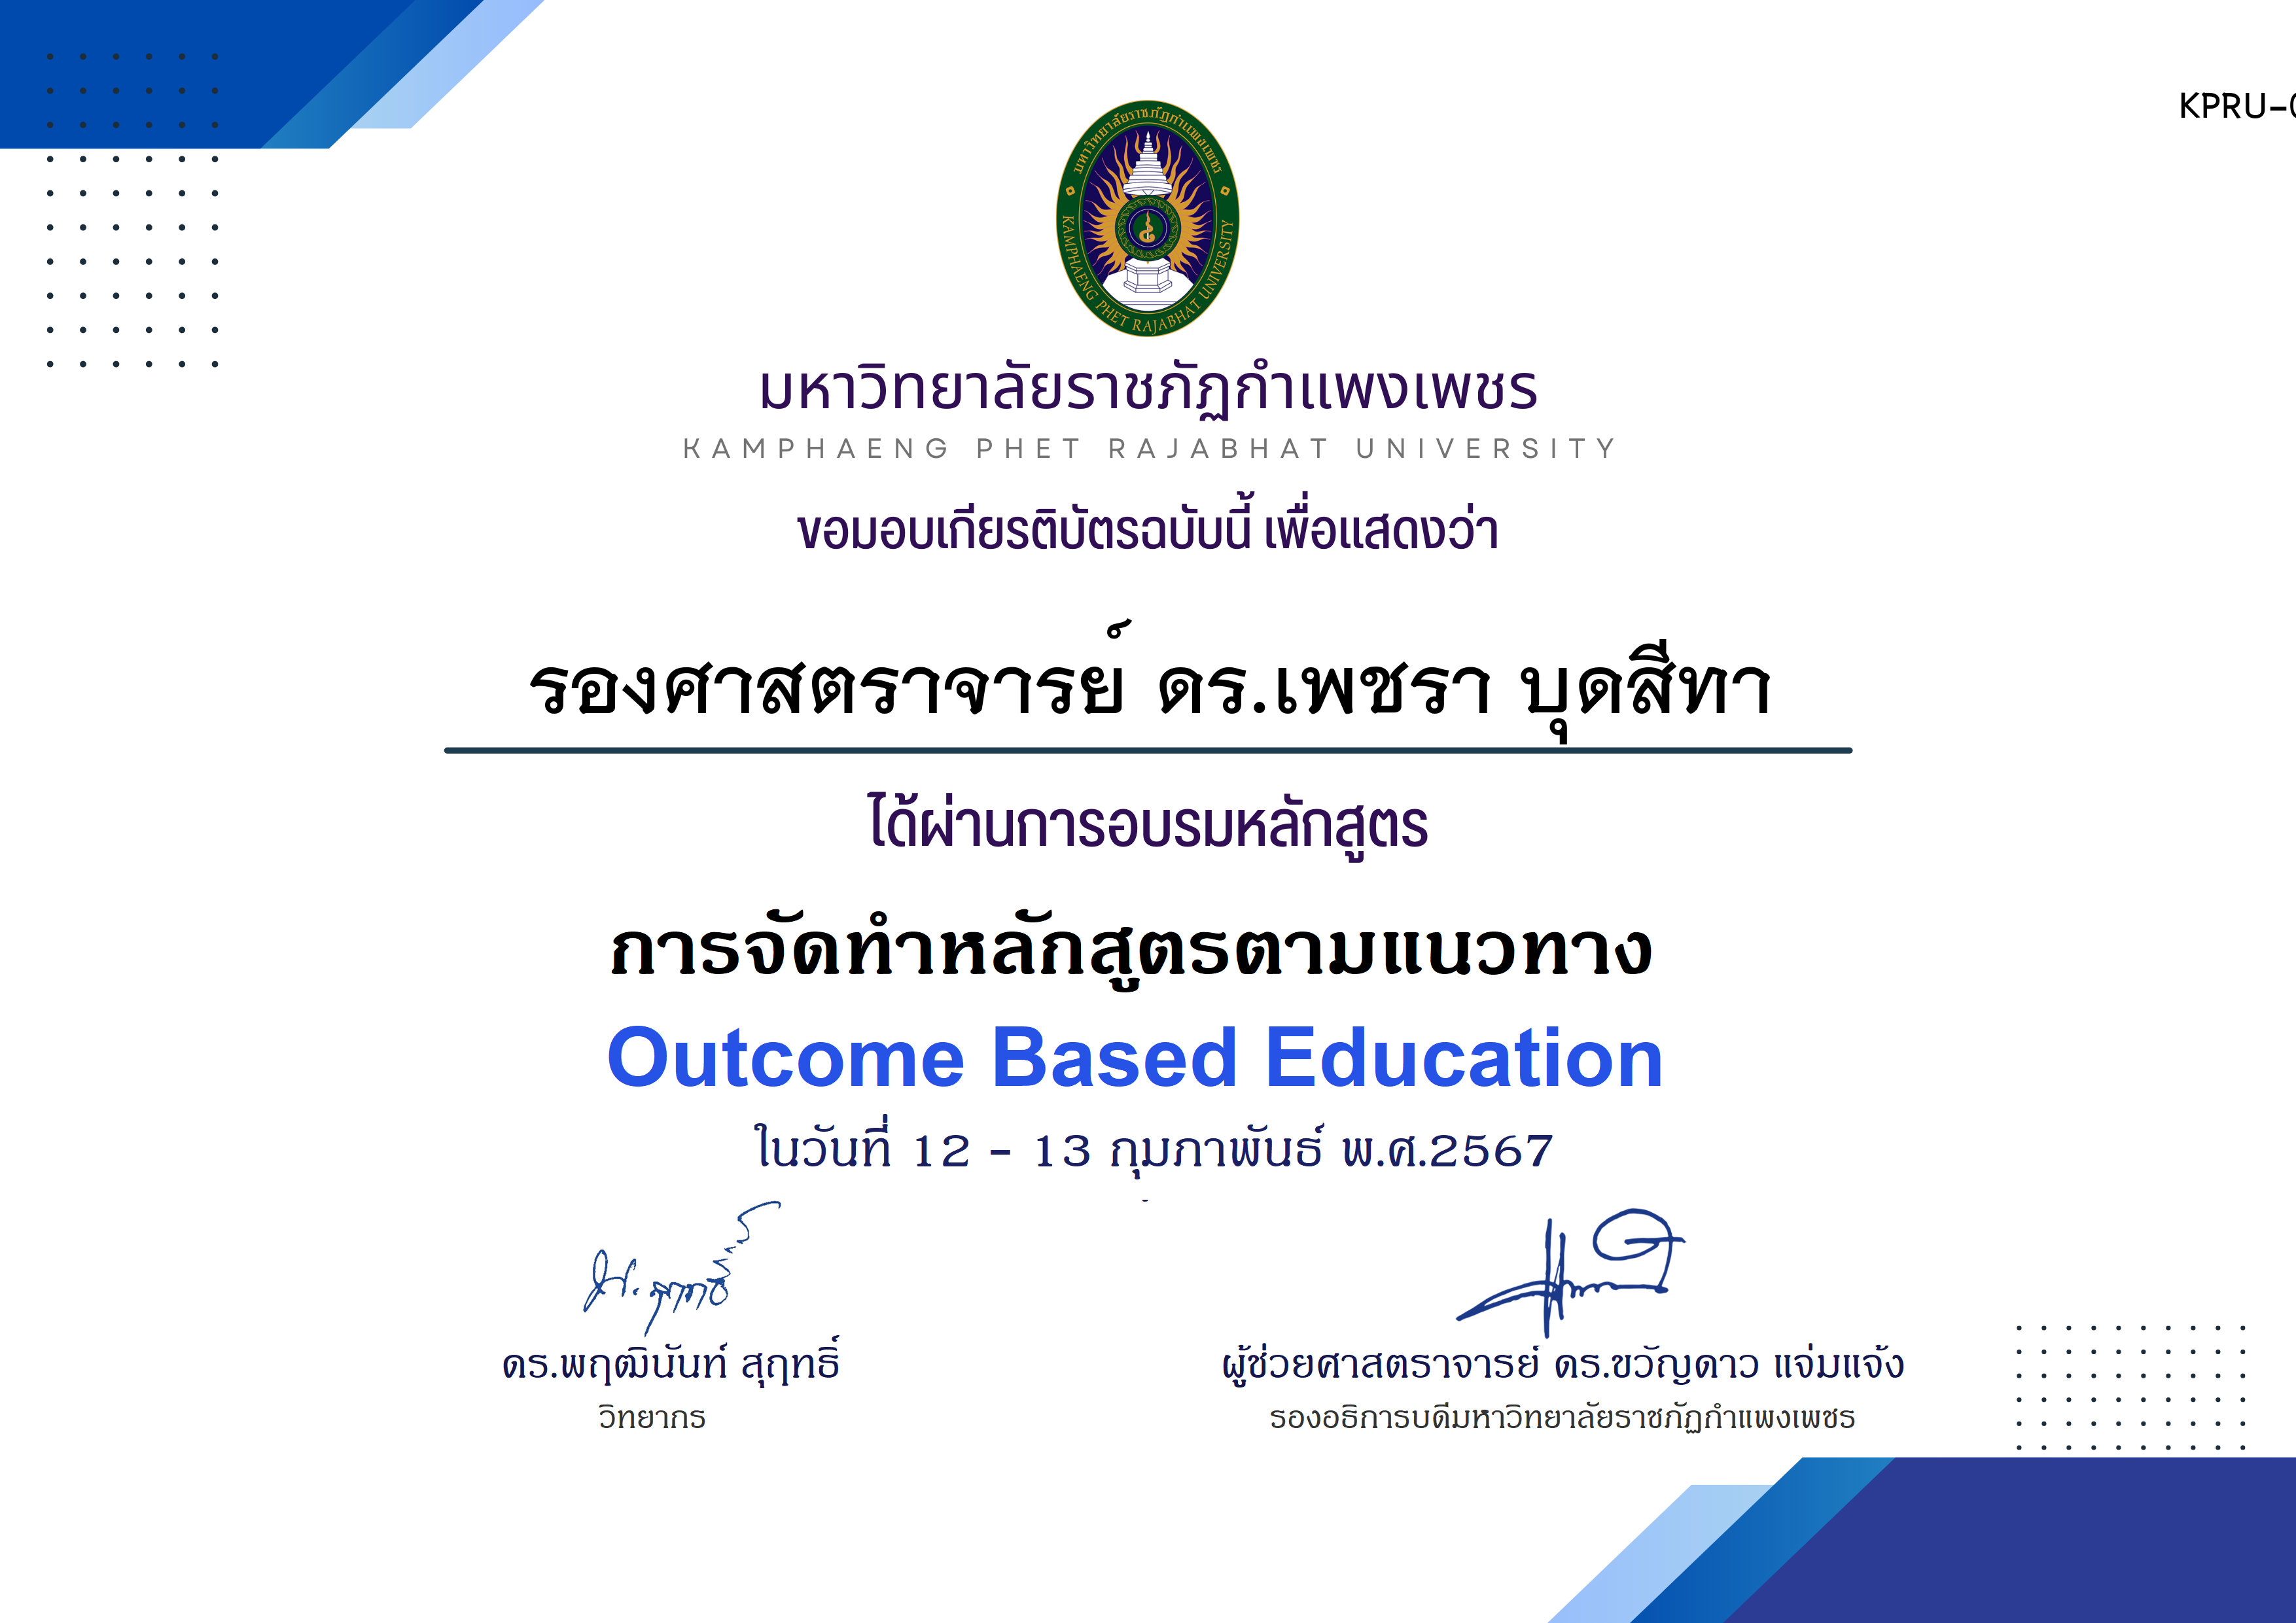 เกียรติบัตร โครงการอบรม การจัดทำหลักสูตรตามแนวทาง Outcome Based Education ของ รองศาสตราจารย์ ดร.เพชรา บุดสีทา